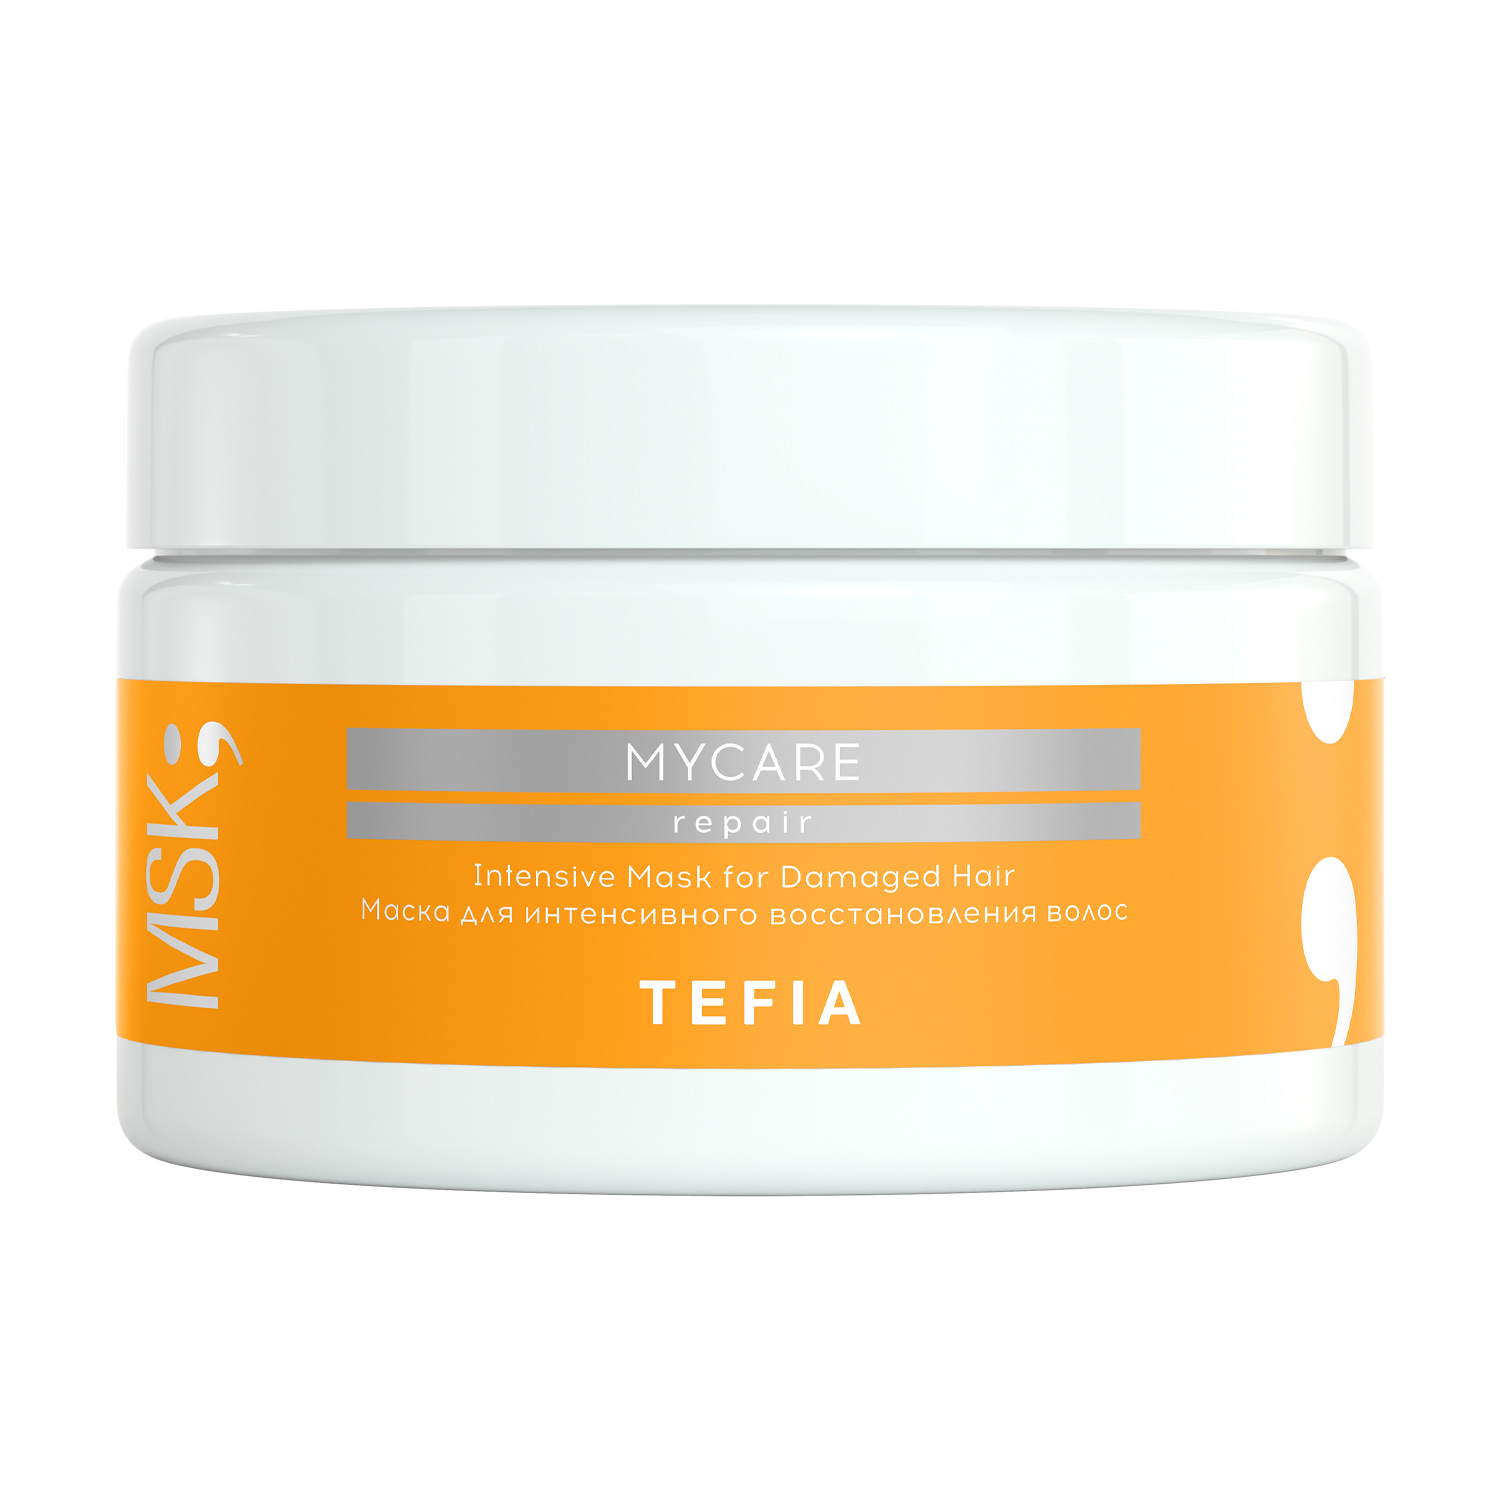 Купить Tefia Маска для интенсивного восстановления волос 250 мл (Tefia, Mycare)